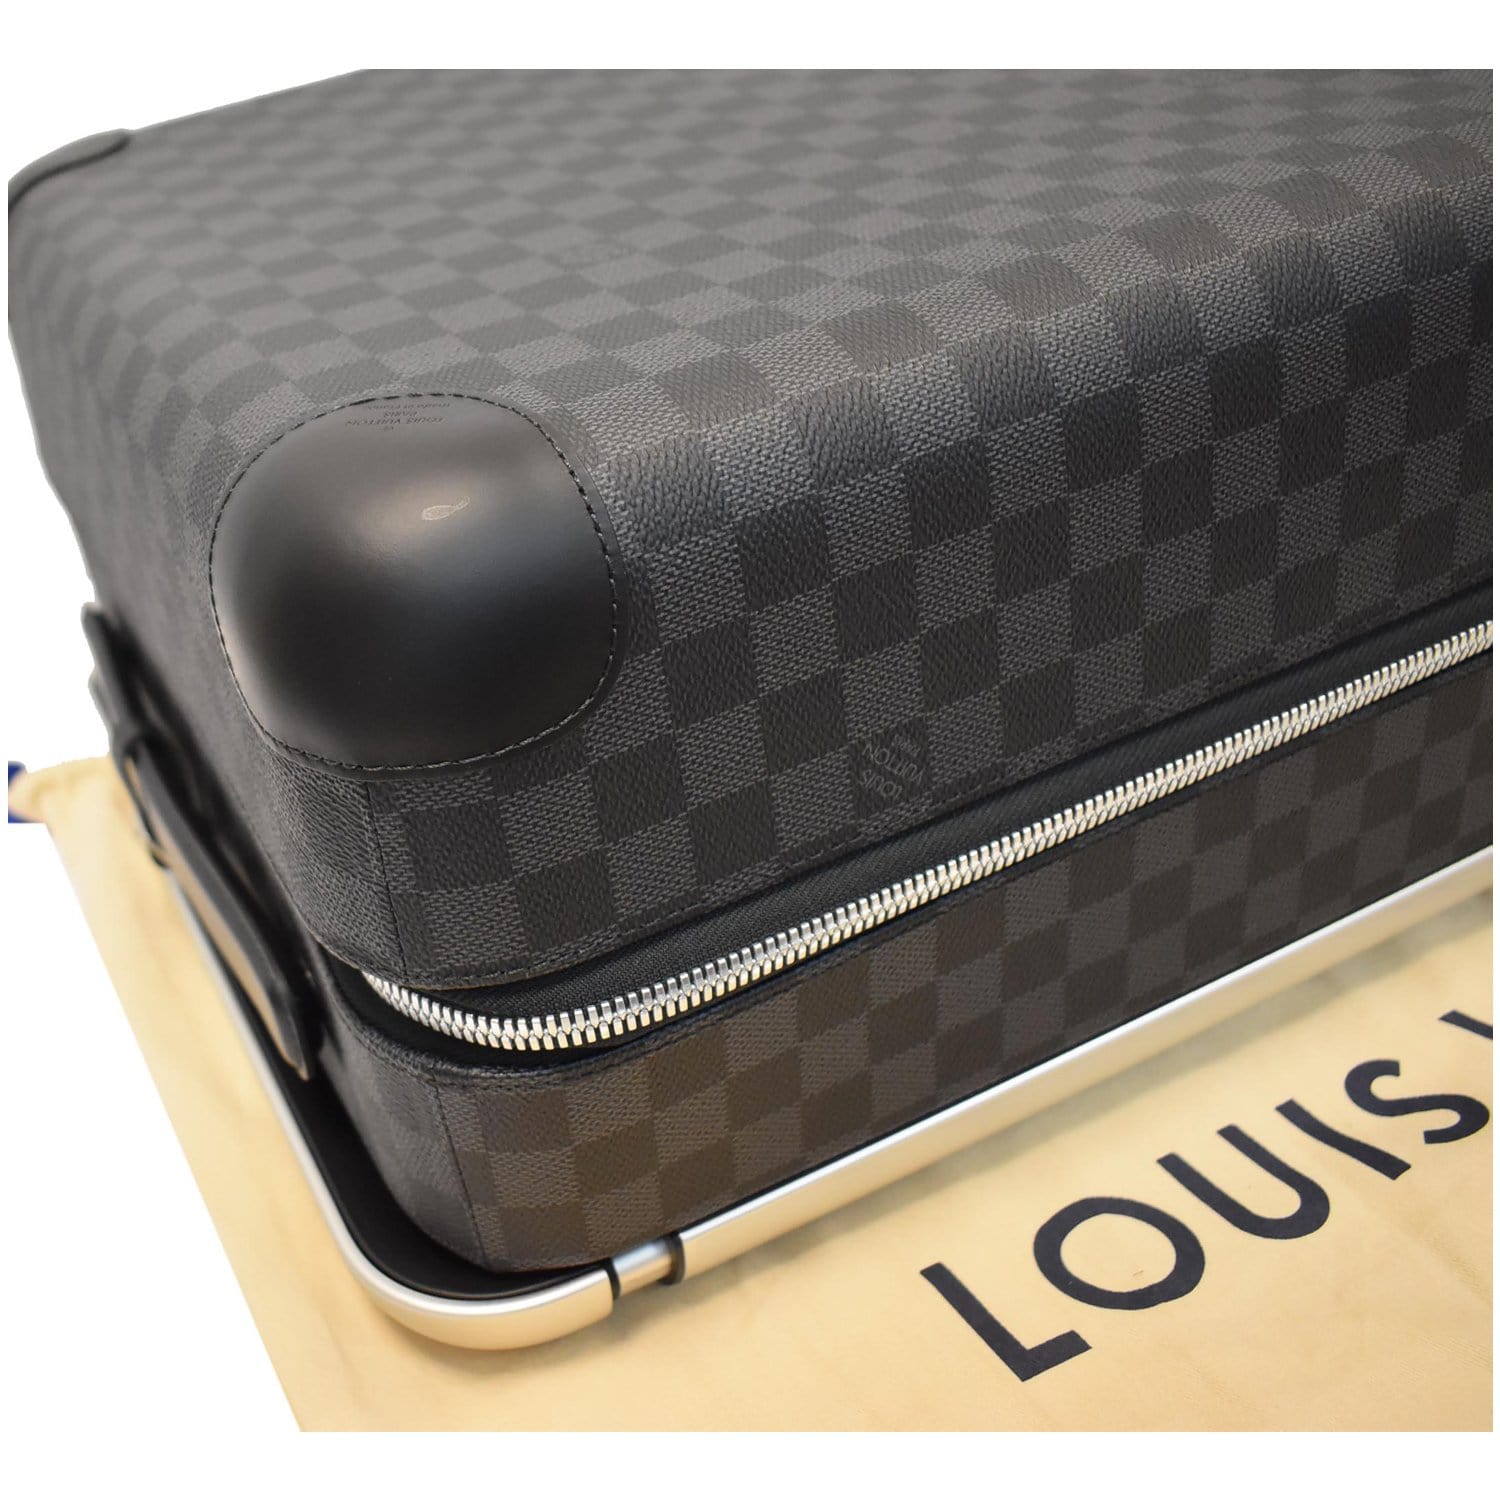 Louis Vuitton Horizon 55 Carry on Luggage - Damier Graphite